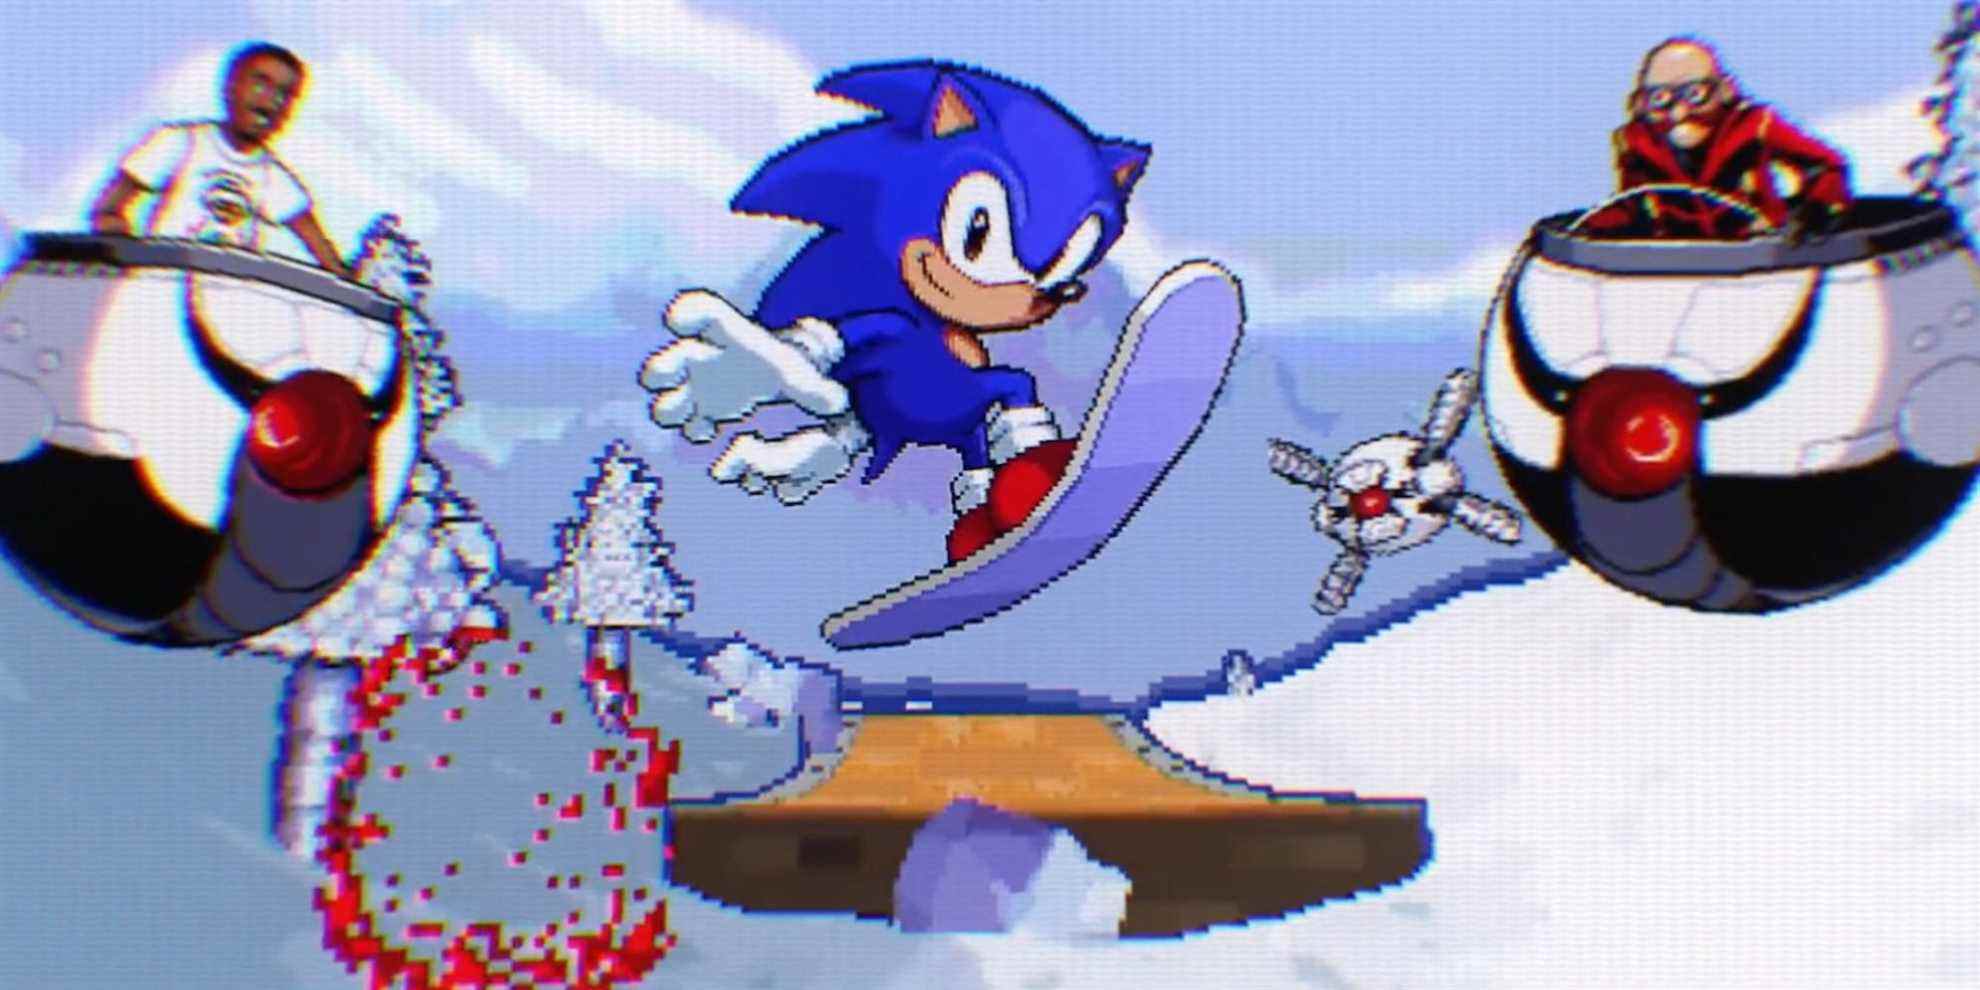 Les crédits de pixels mettant en vedette des personnages dans Sonic the Hedgehog 2